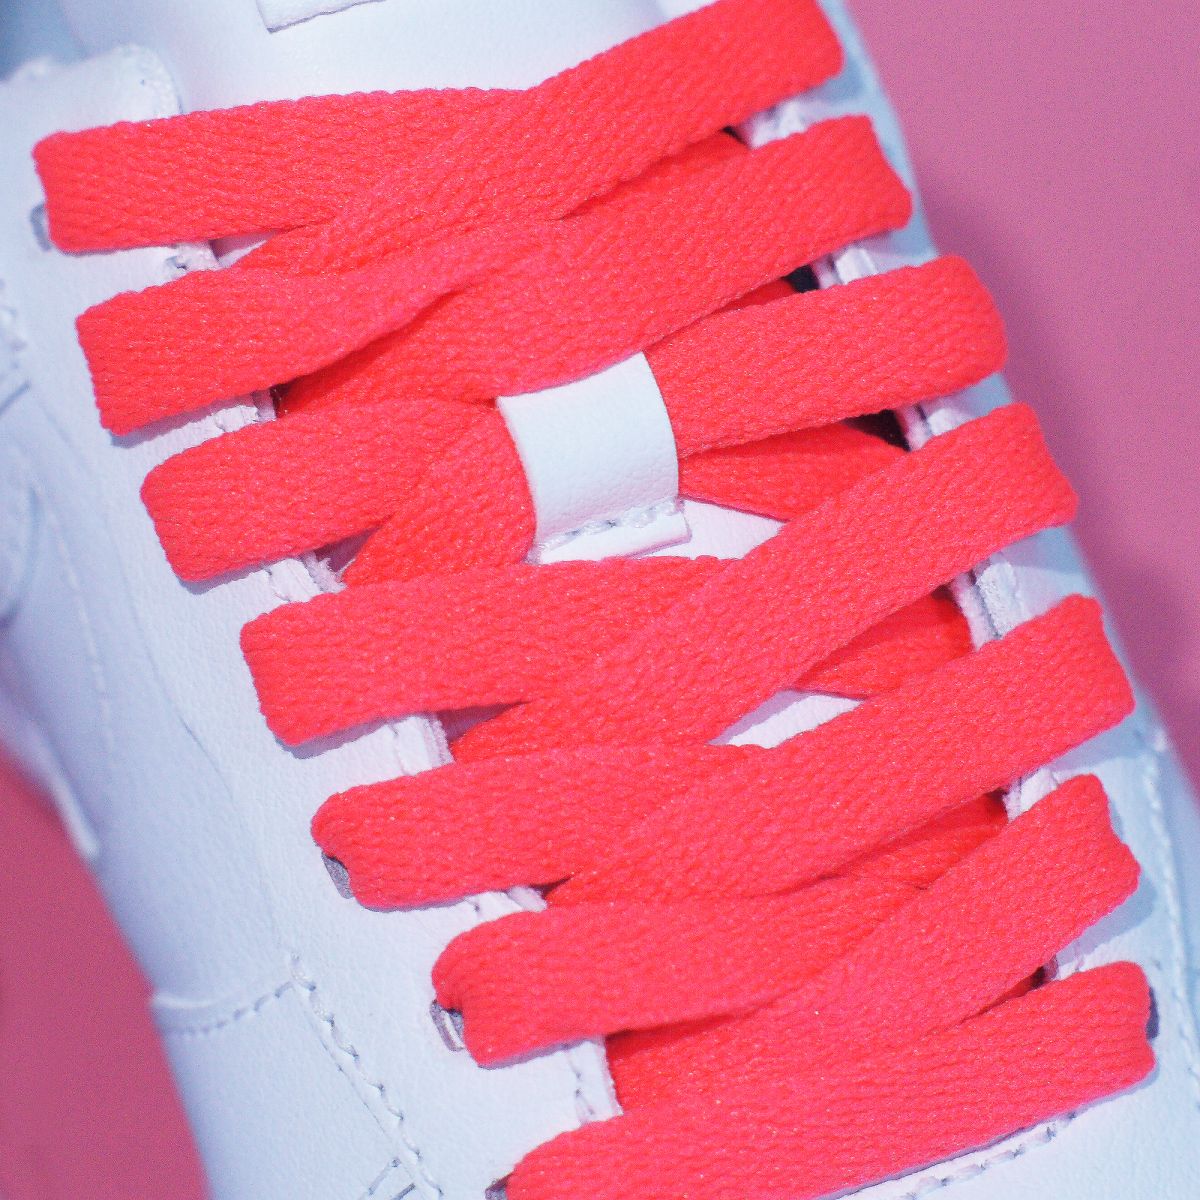 DÂY GIÀY FLAT (Dây giày dẹp) - HỒNG NEON | King shoe laces tại HCM